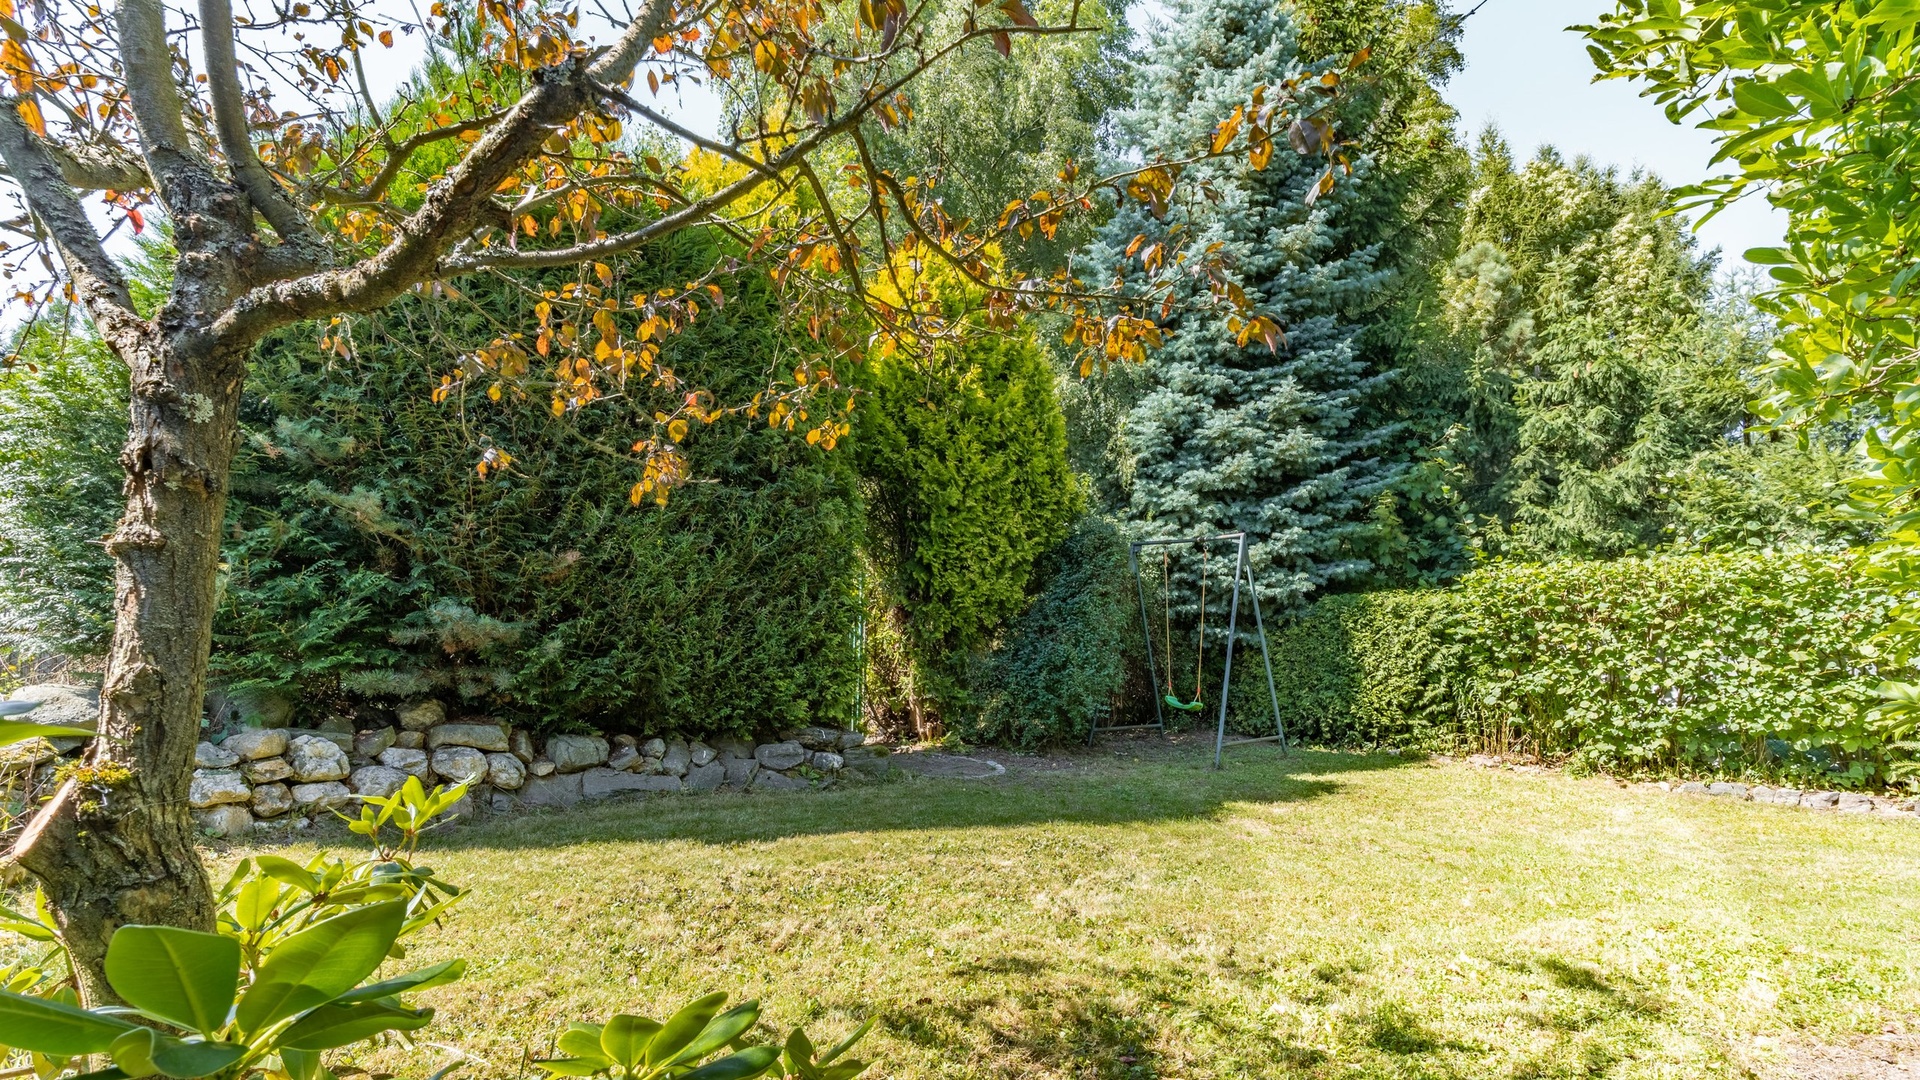 Prodej zahrady 396 m2 s chatou 50 m2 užitné plochy u Langrova lesa ve Svitavách